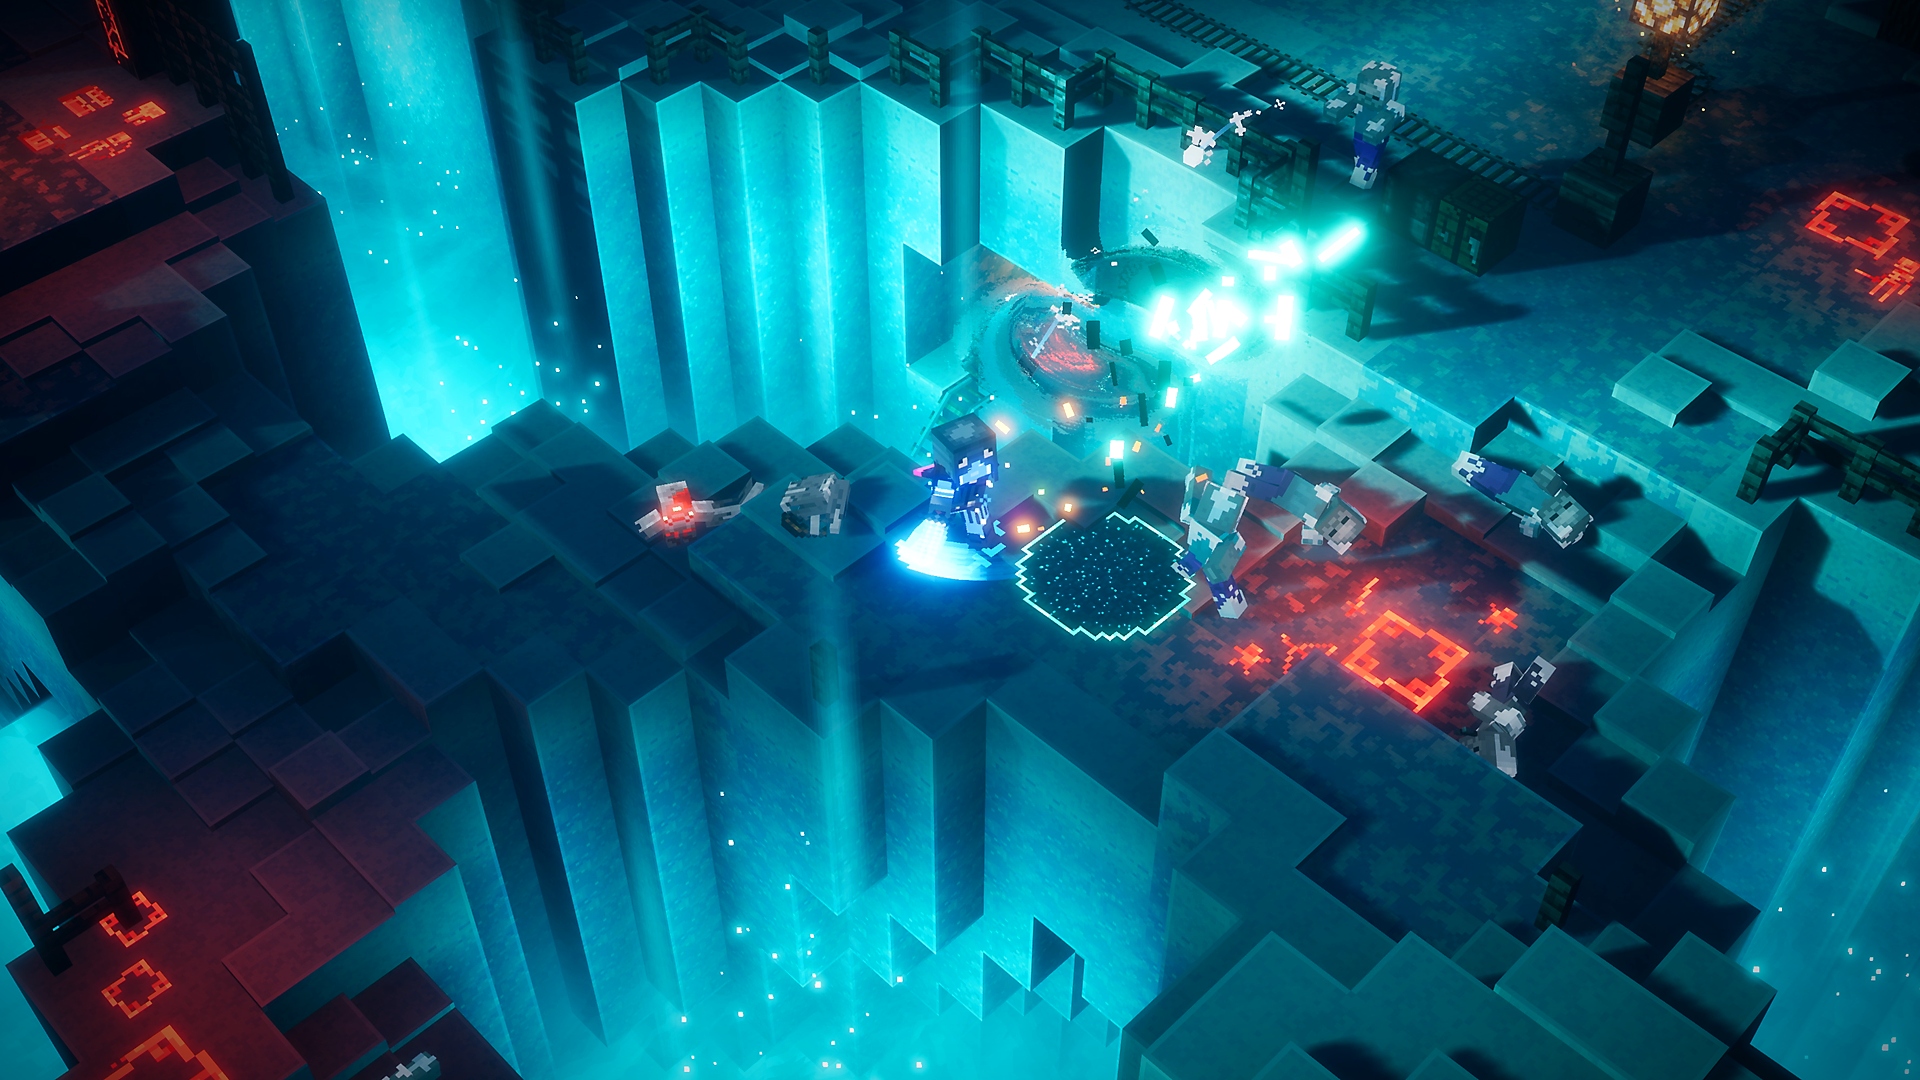 Noche resplandeciente, la aventura de temporada de Minecraft Dungeons, que muestra una luz azul brillando y a personajes luchando